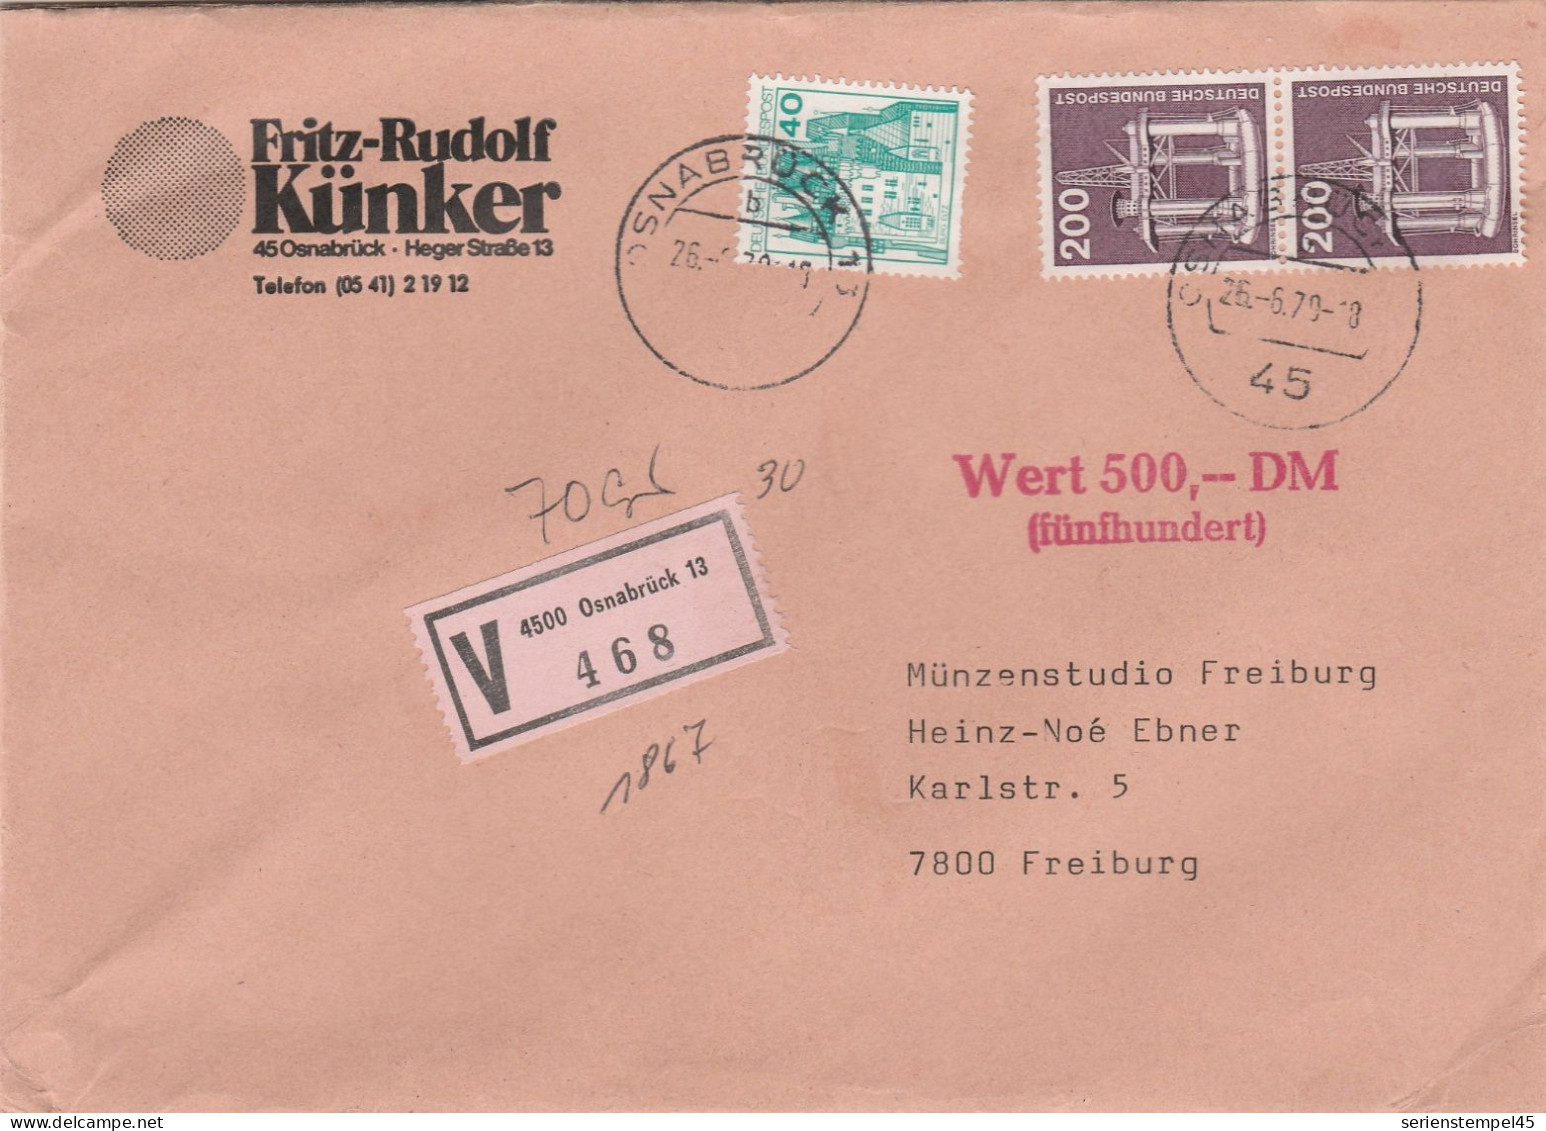 Bund Wertbrief 500 DM Mit V Zettel 4500 Osnabrück 13 Porto 4,40 DM 1979 - R- Und V-Zettel